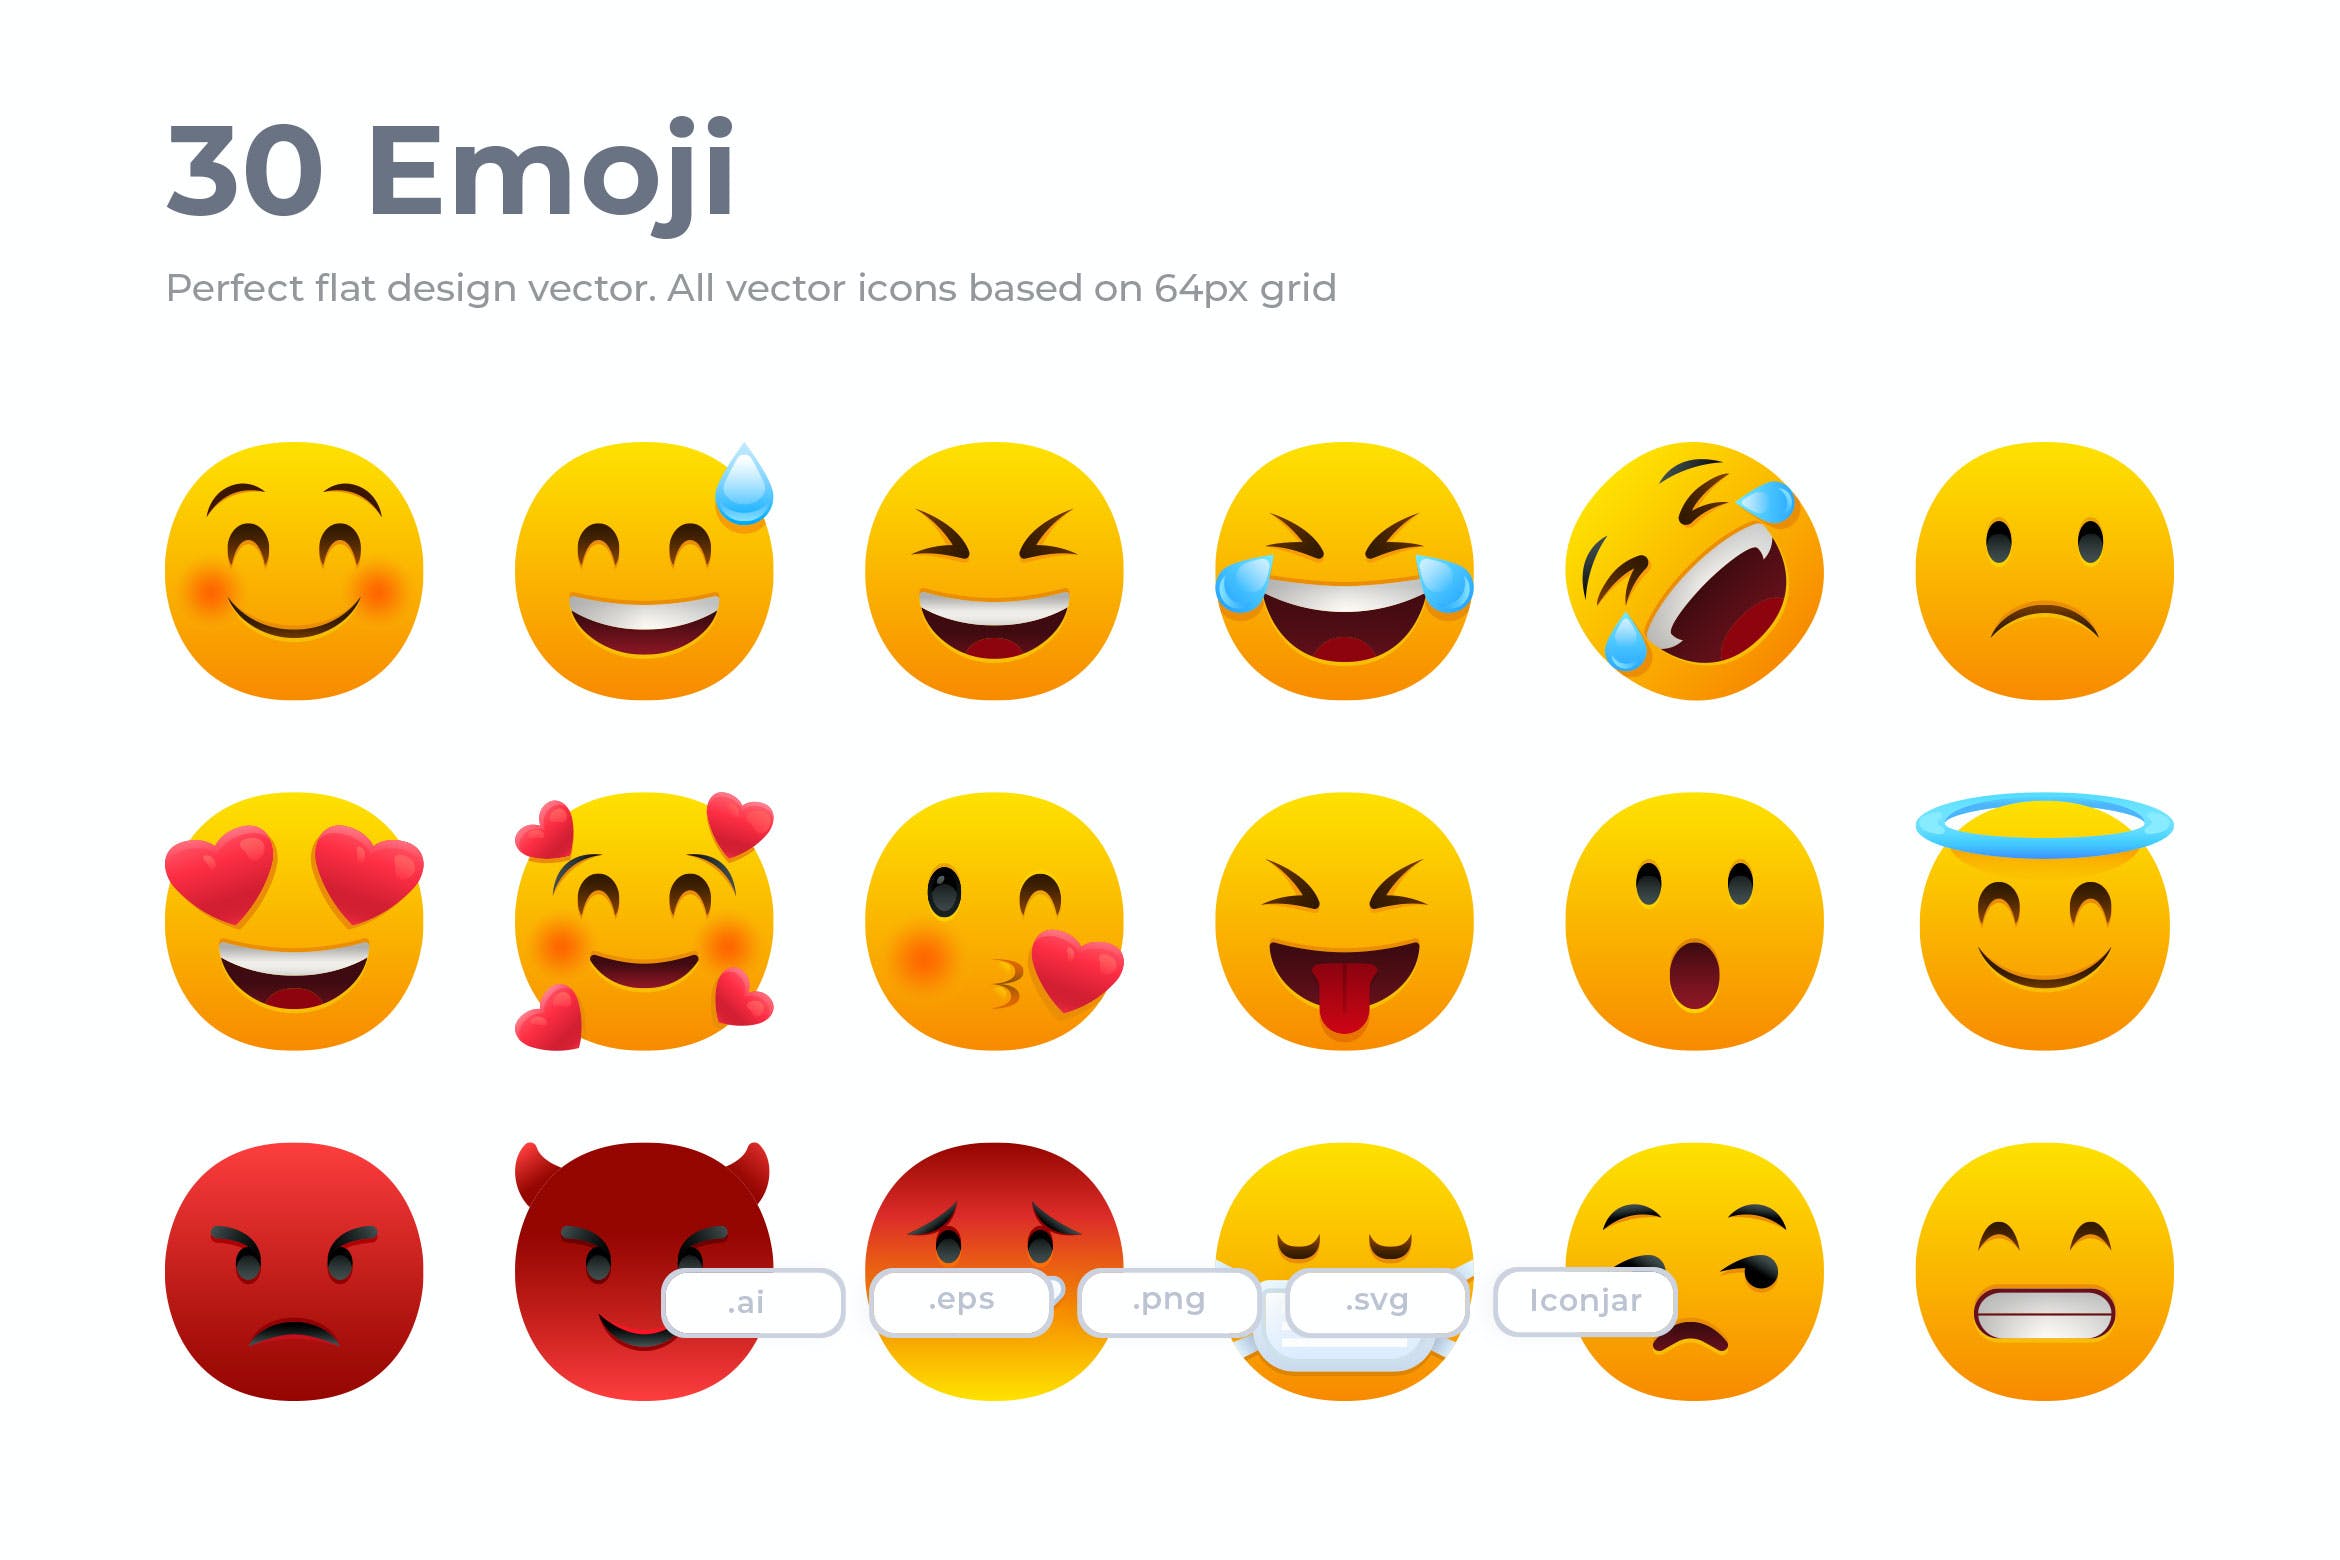 可编辑矢量30个Emoji表情符号扁平图标免费下载